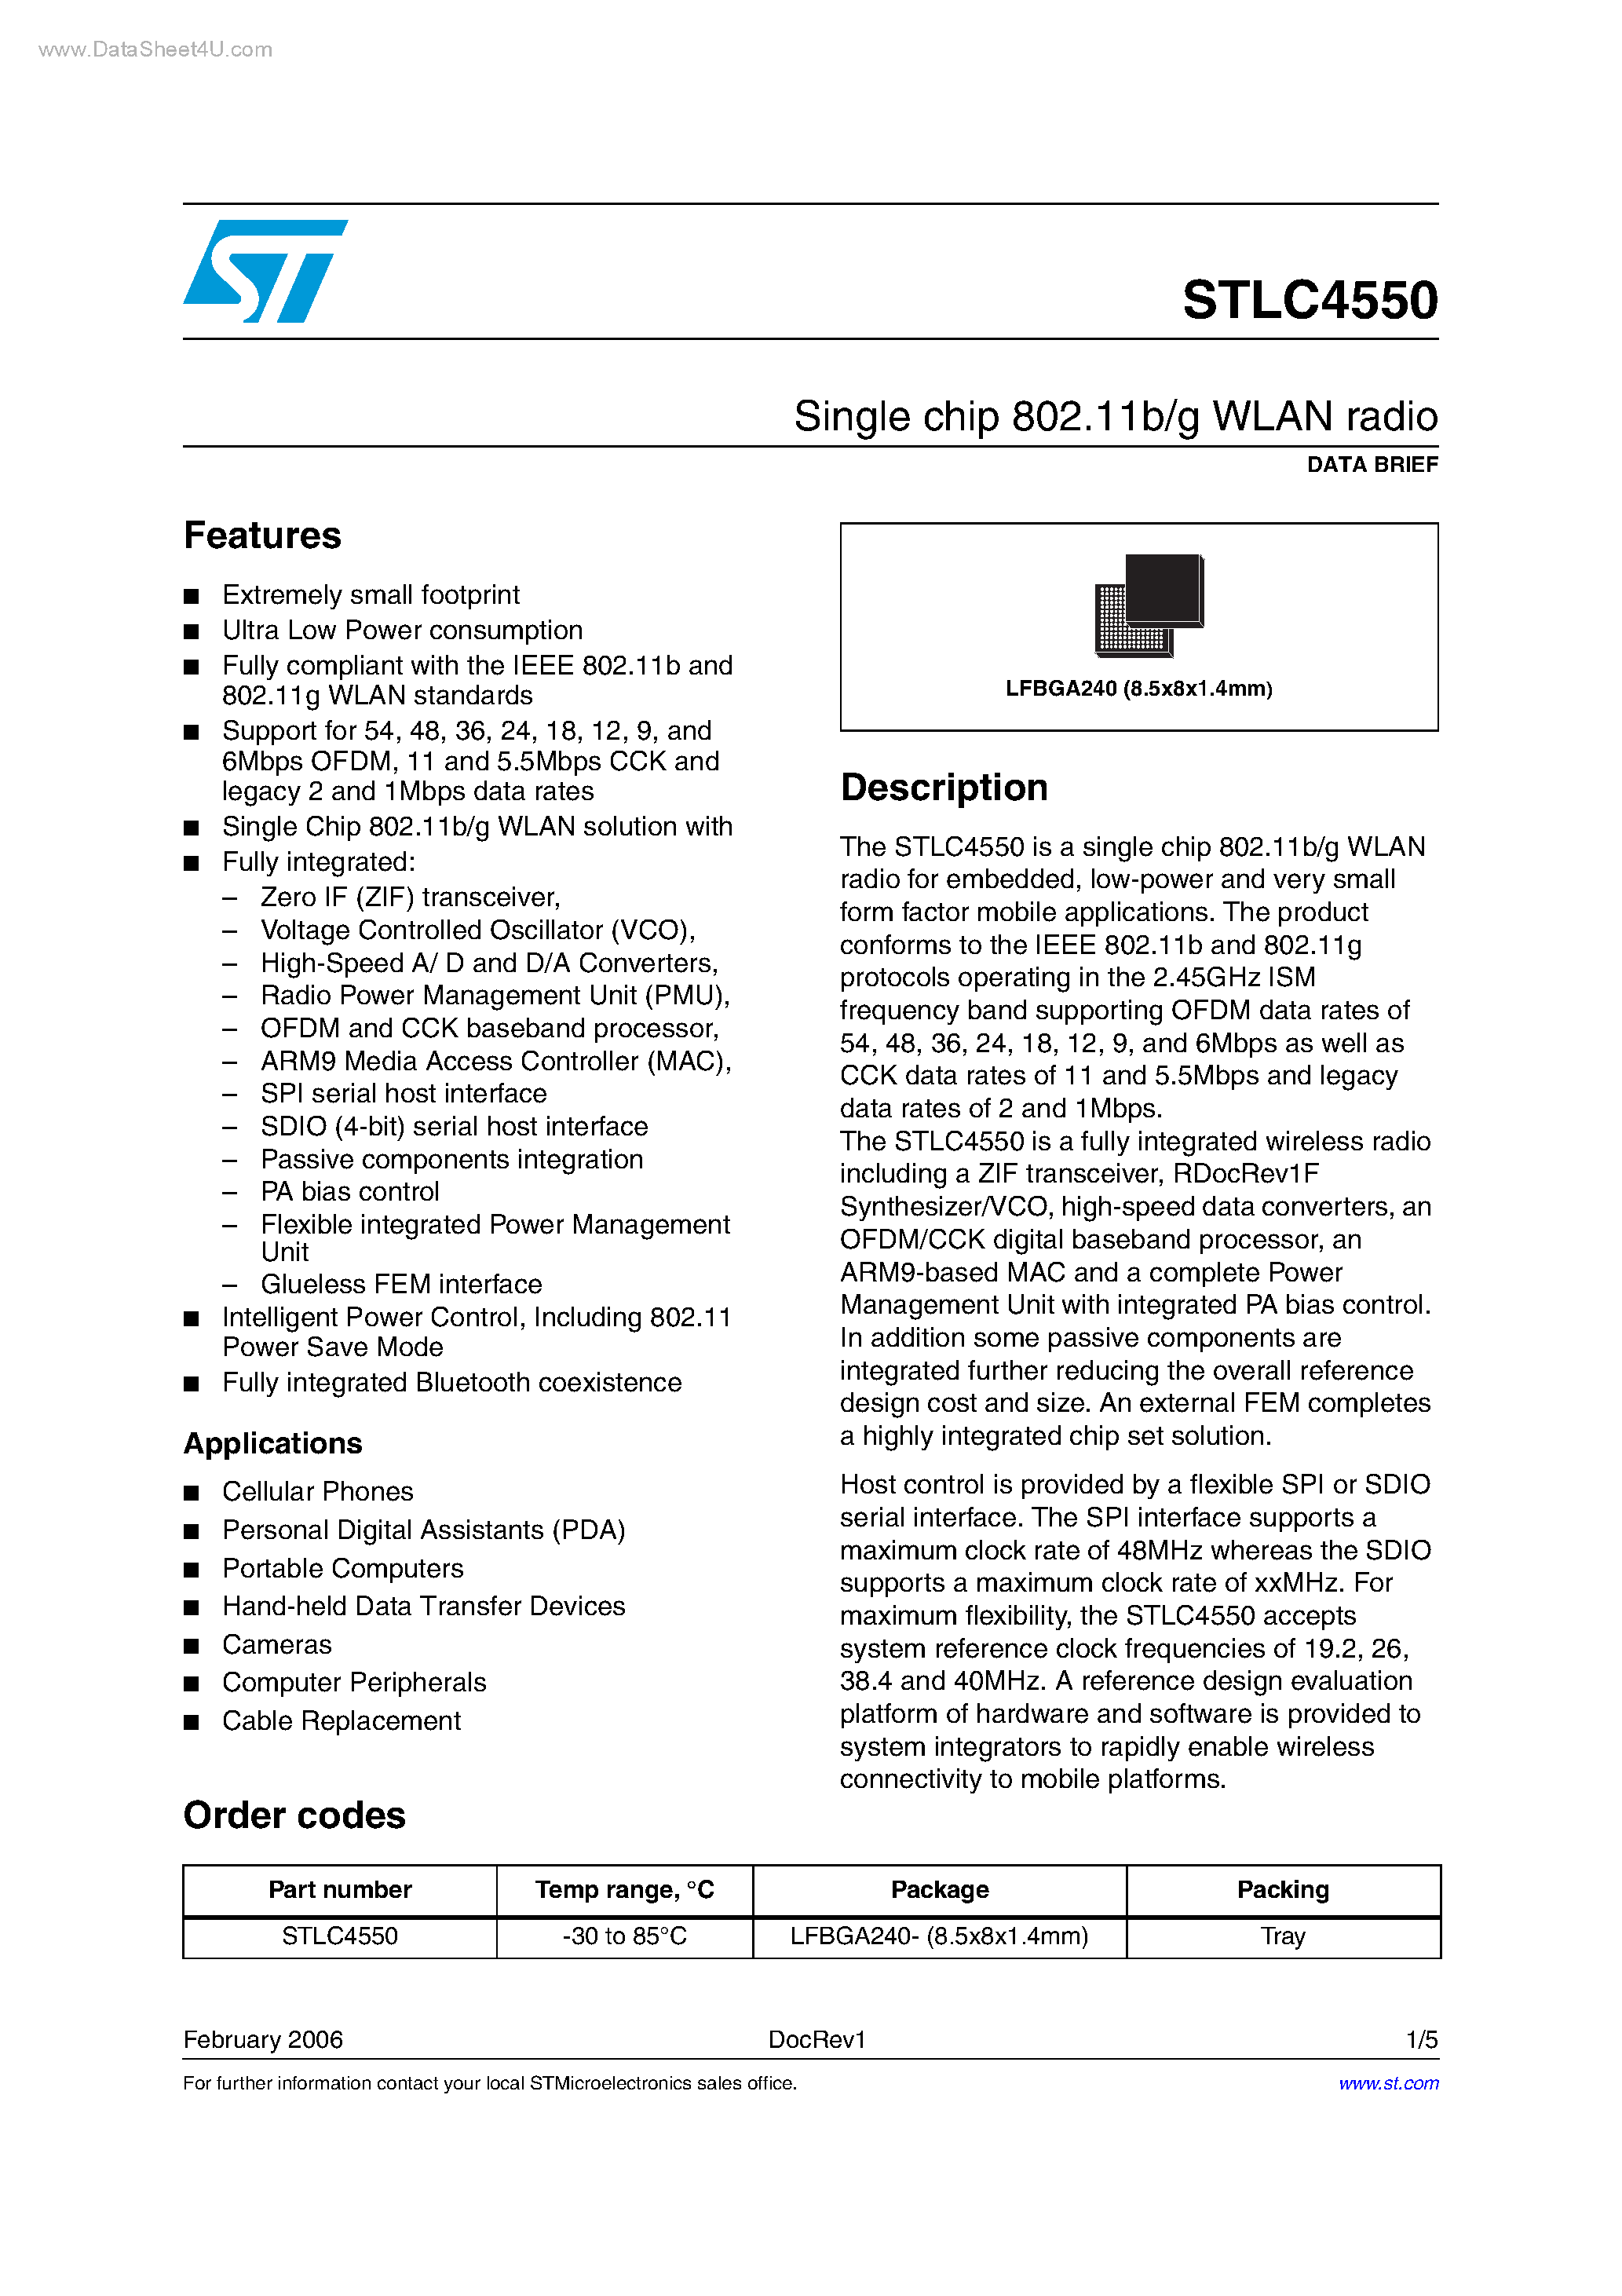 Datasheet STLC4550 - Single chip 802.11b/g WLAN radio page 1